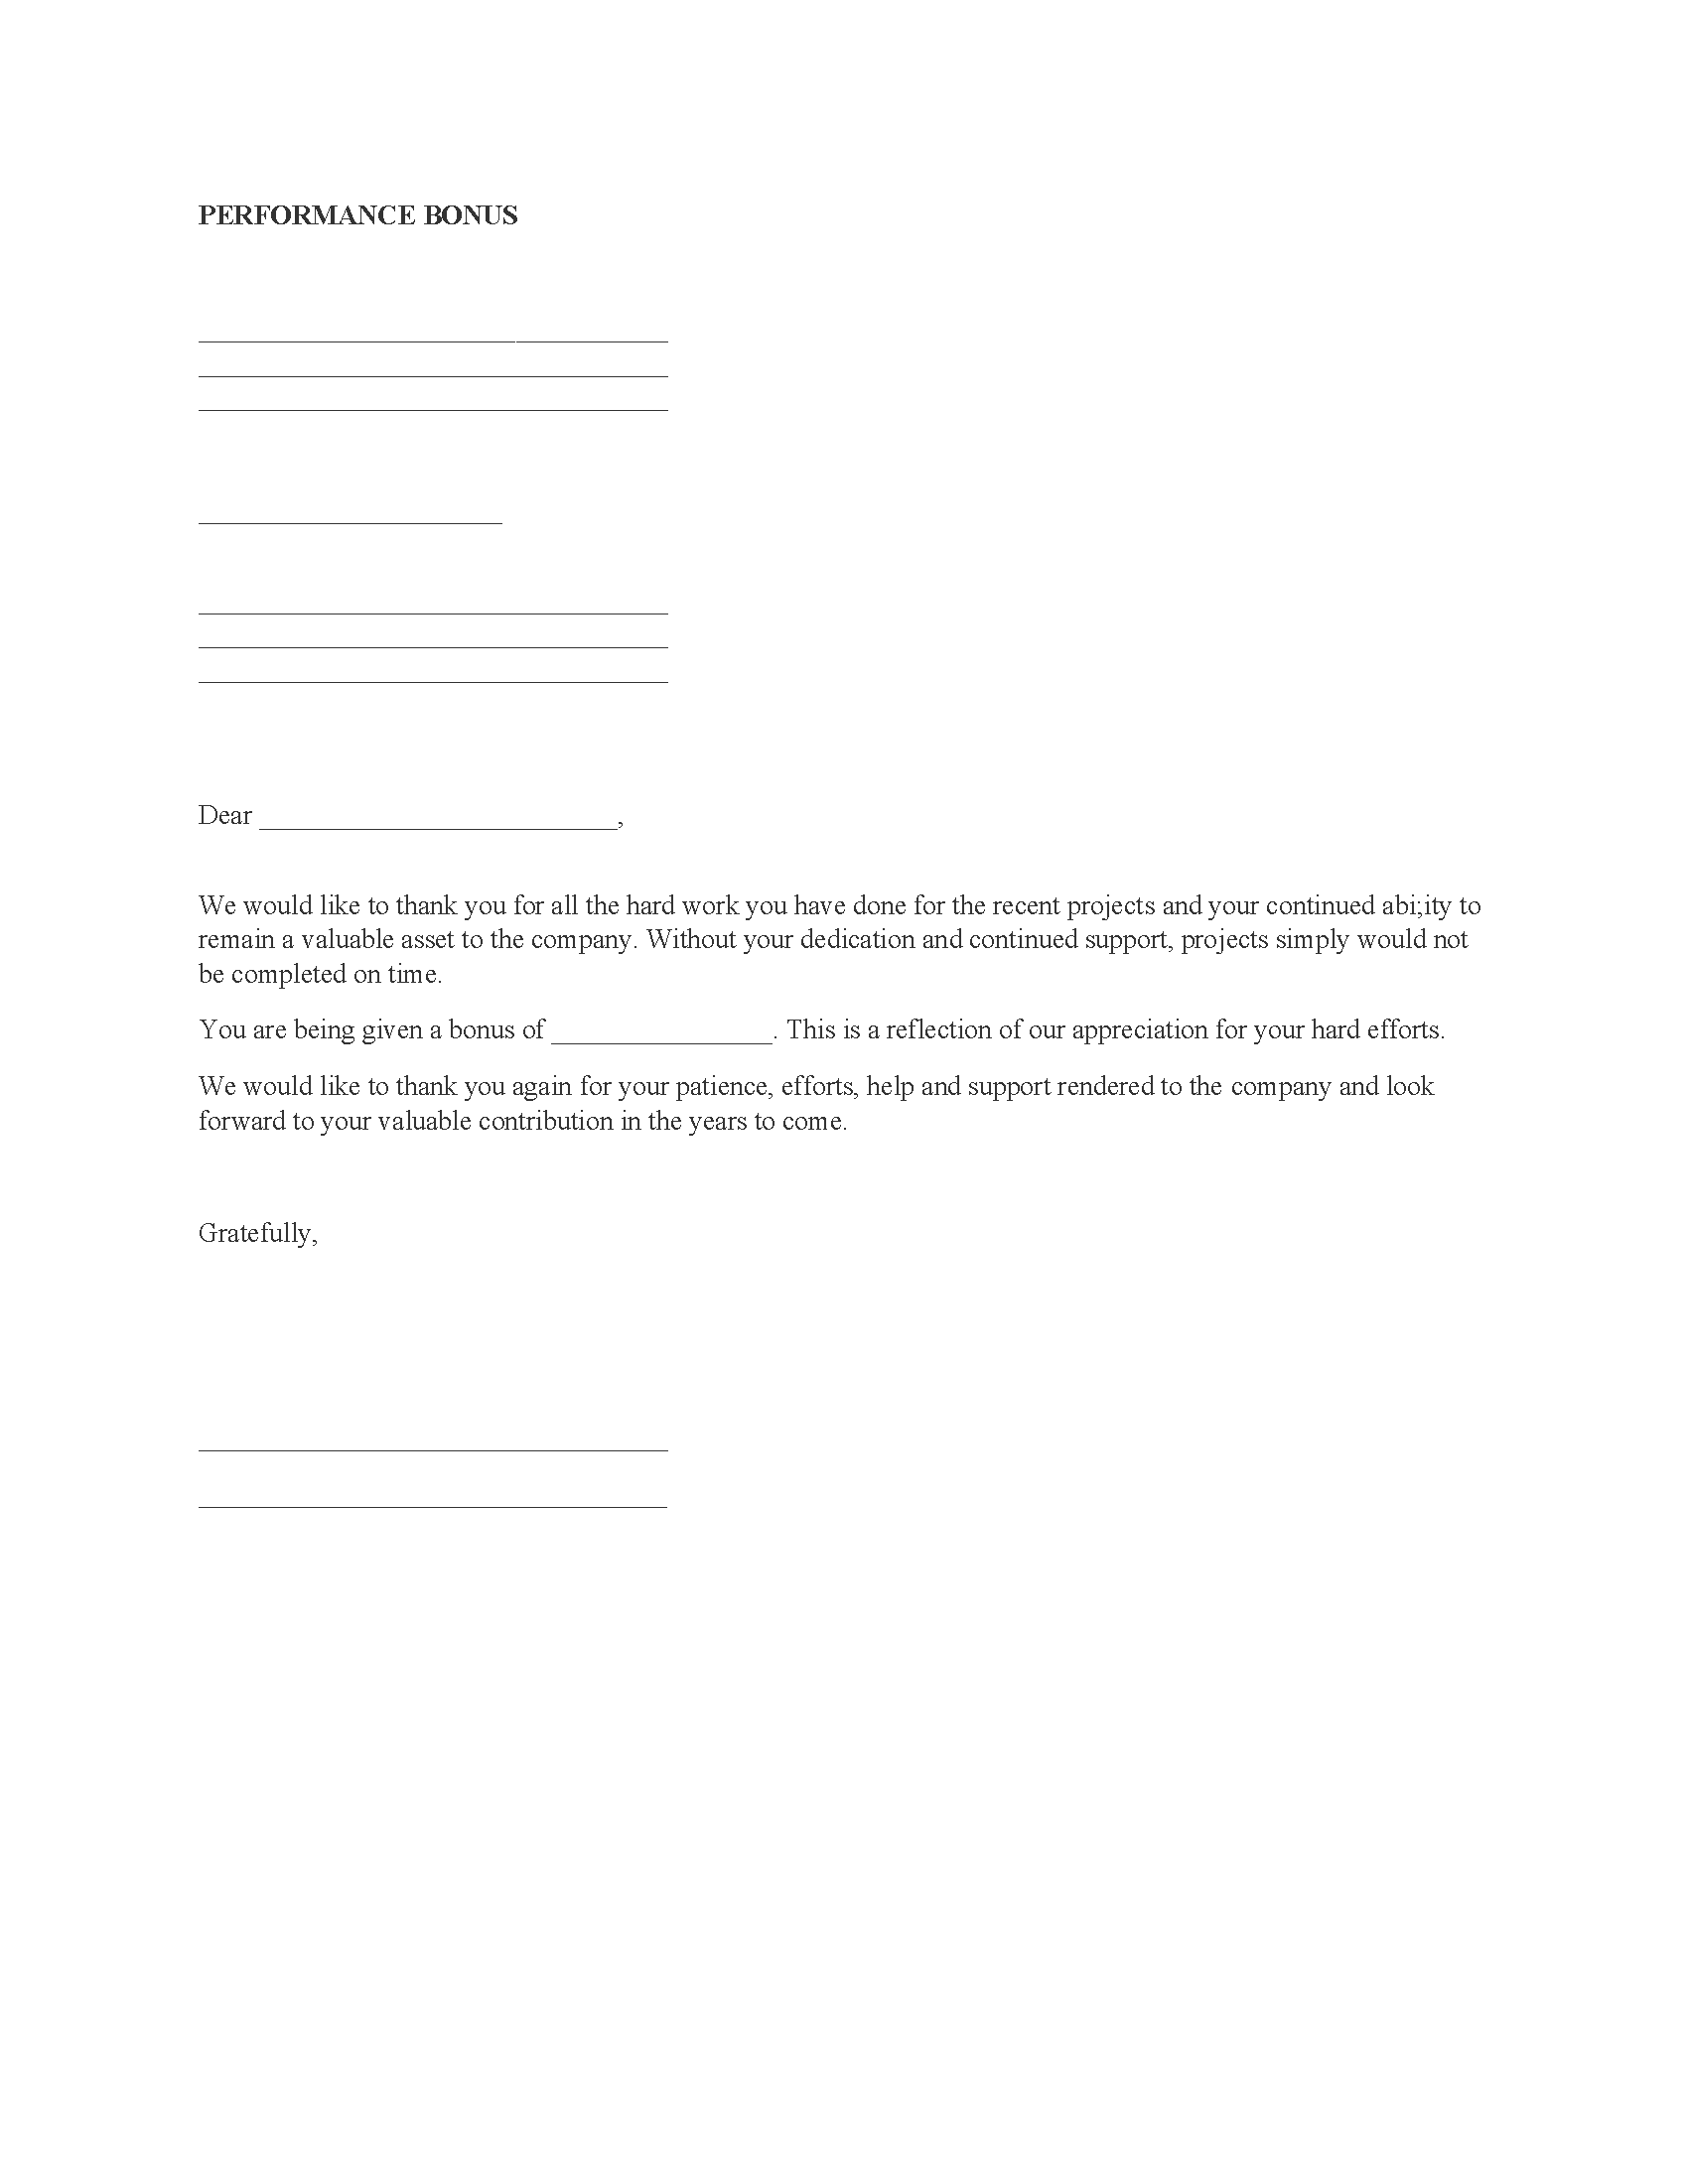 company-bonus-letter-fillable-pdf-free-printable-legal-forms